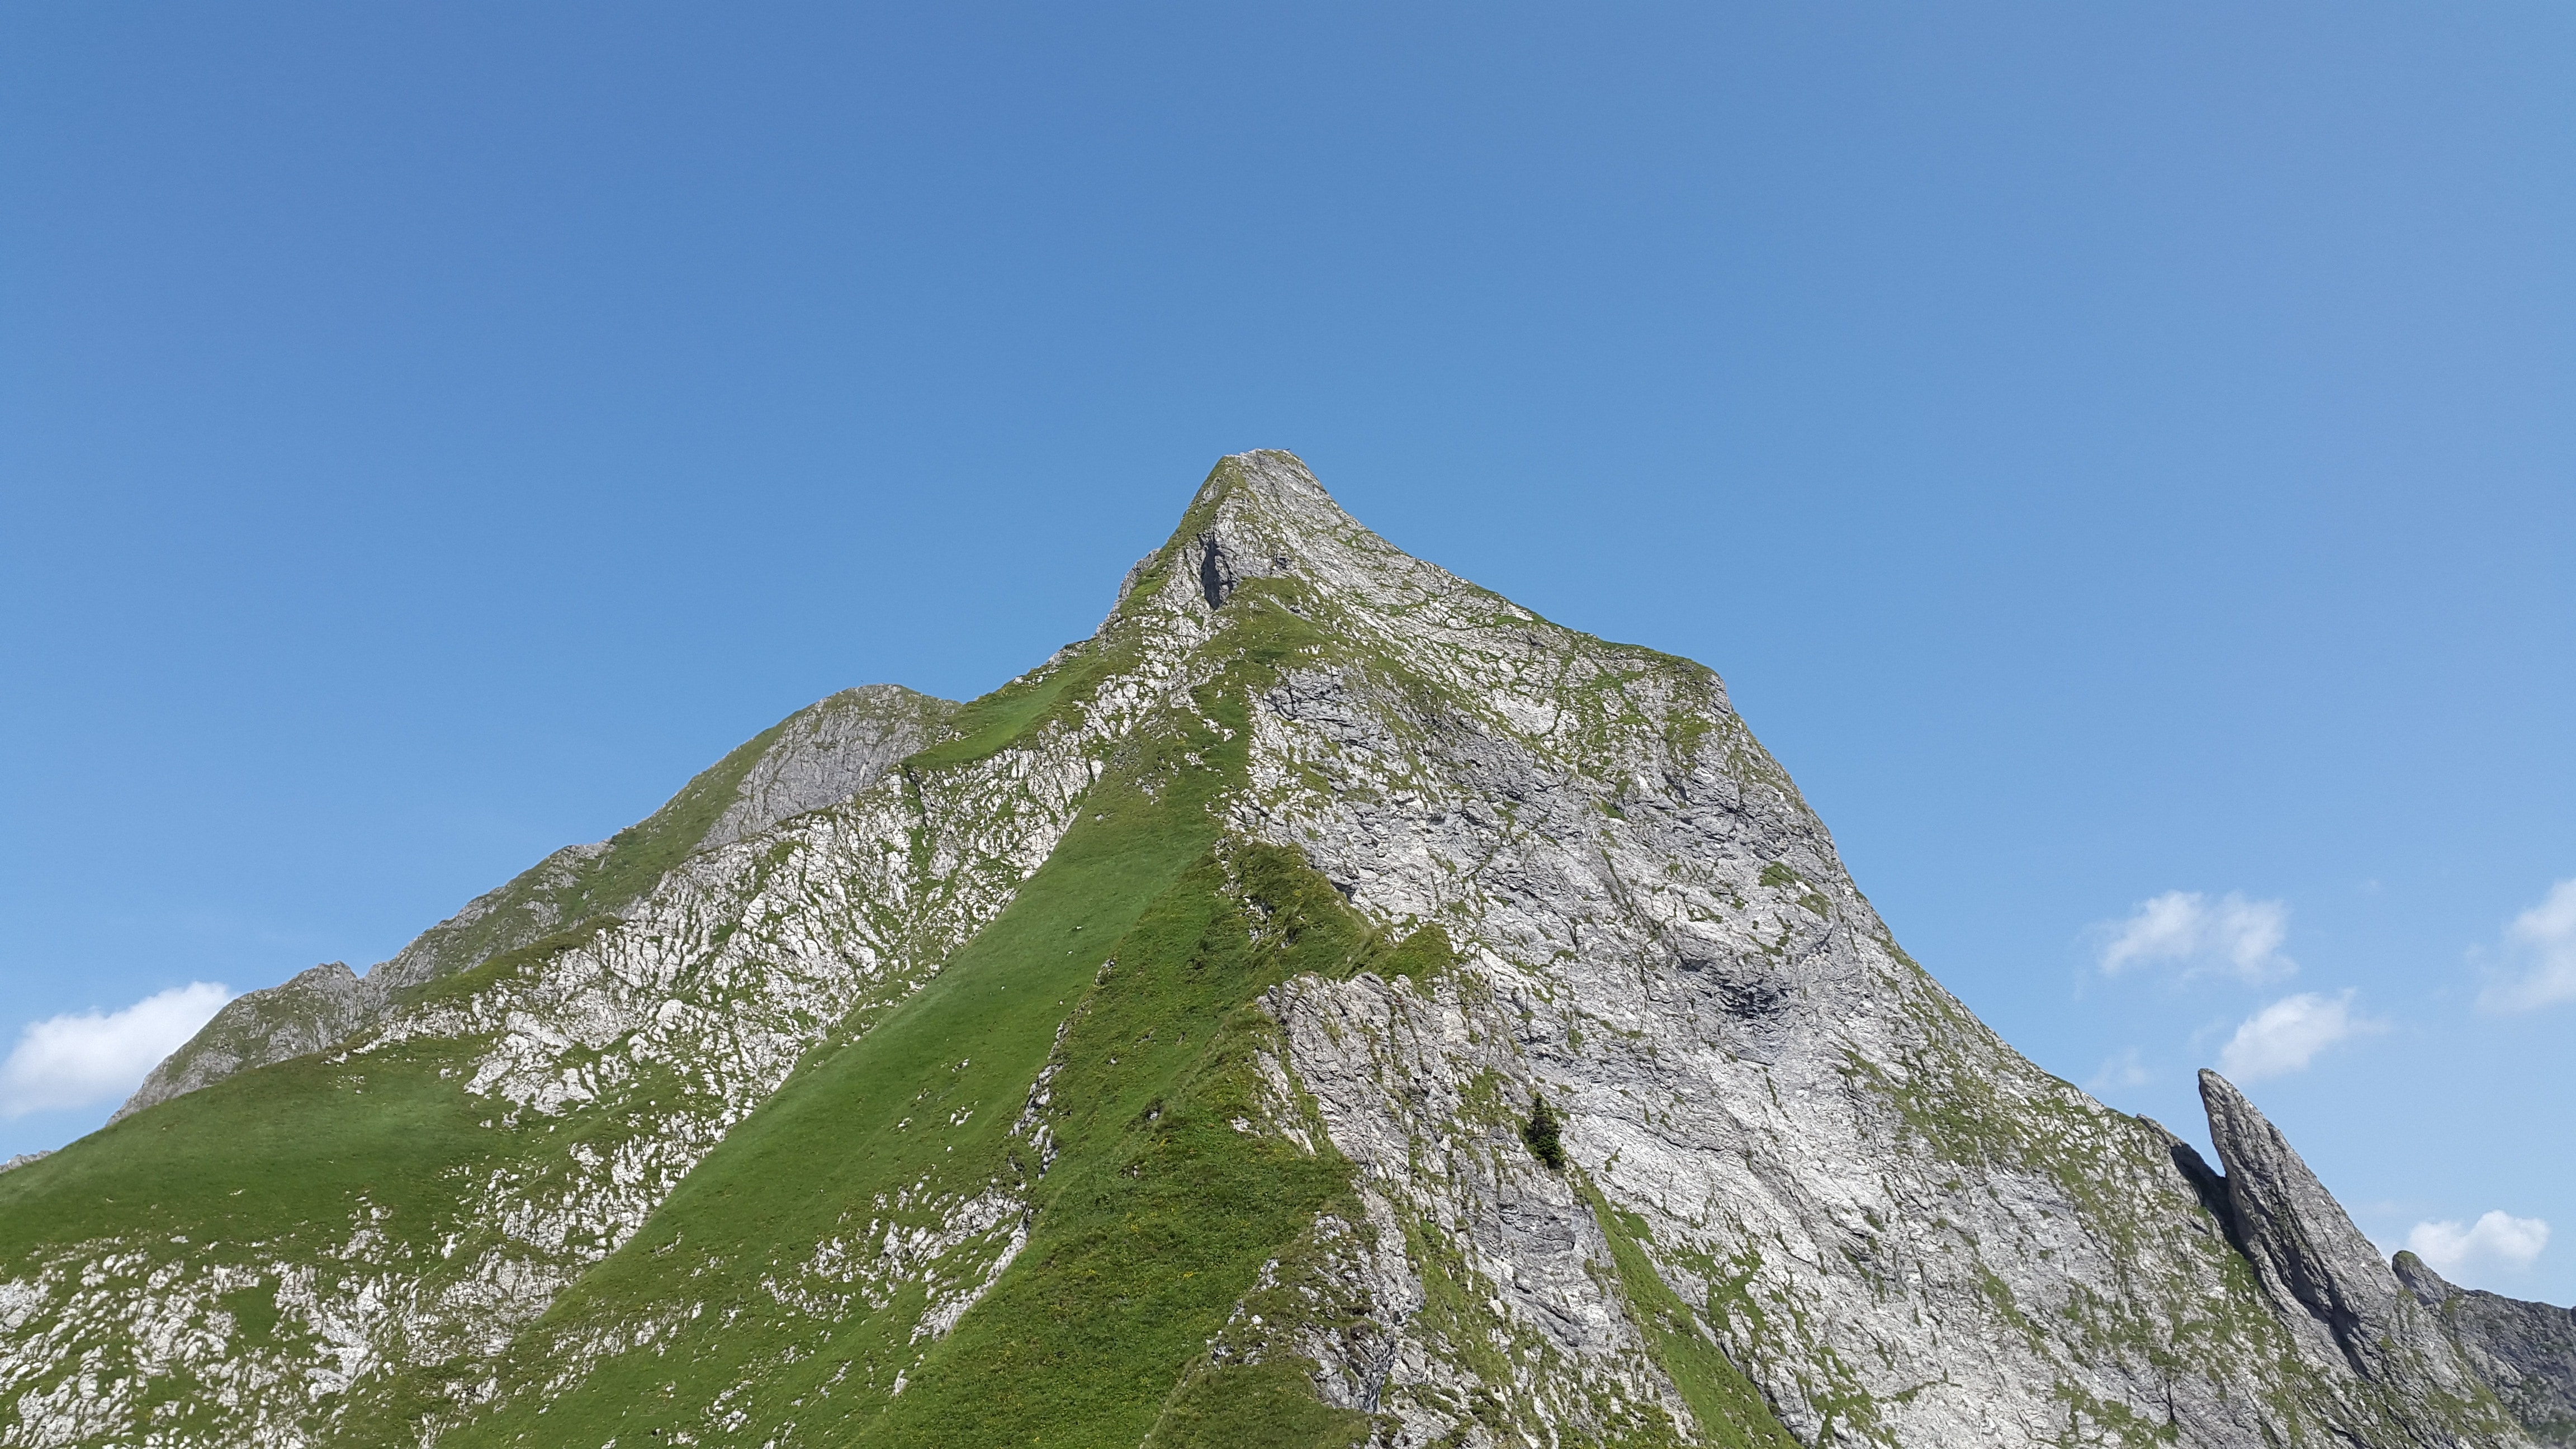 green and grey bifold peak mountain